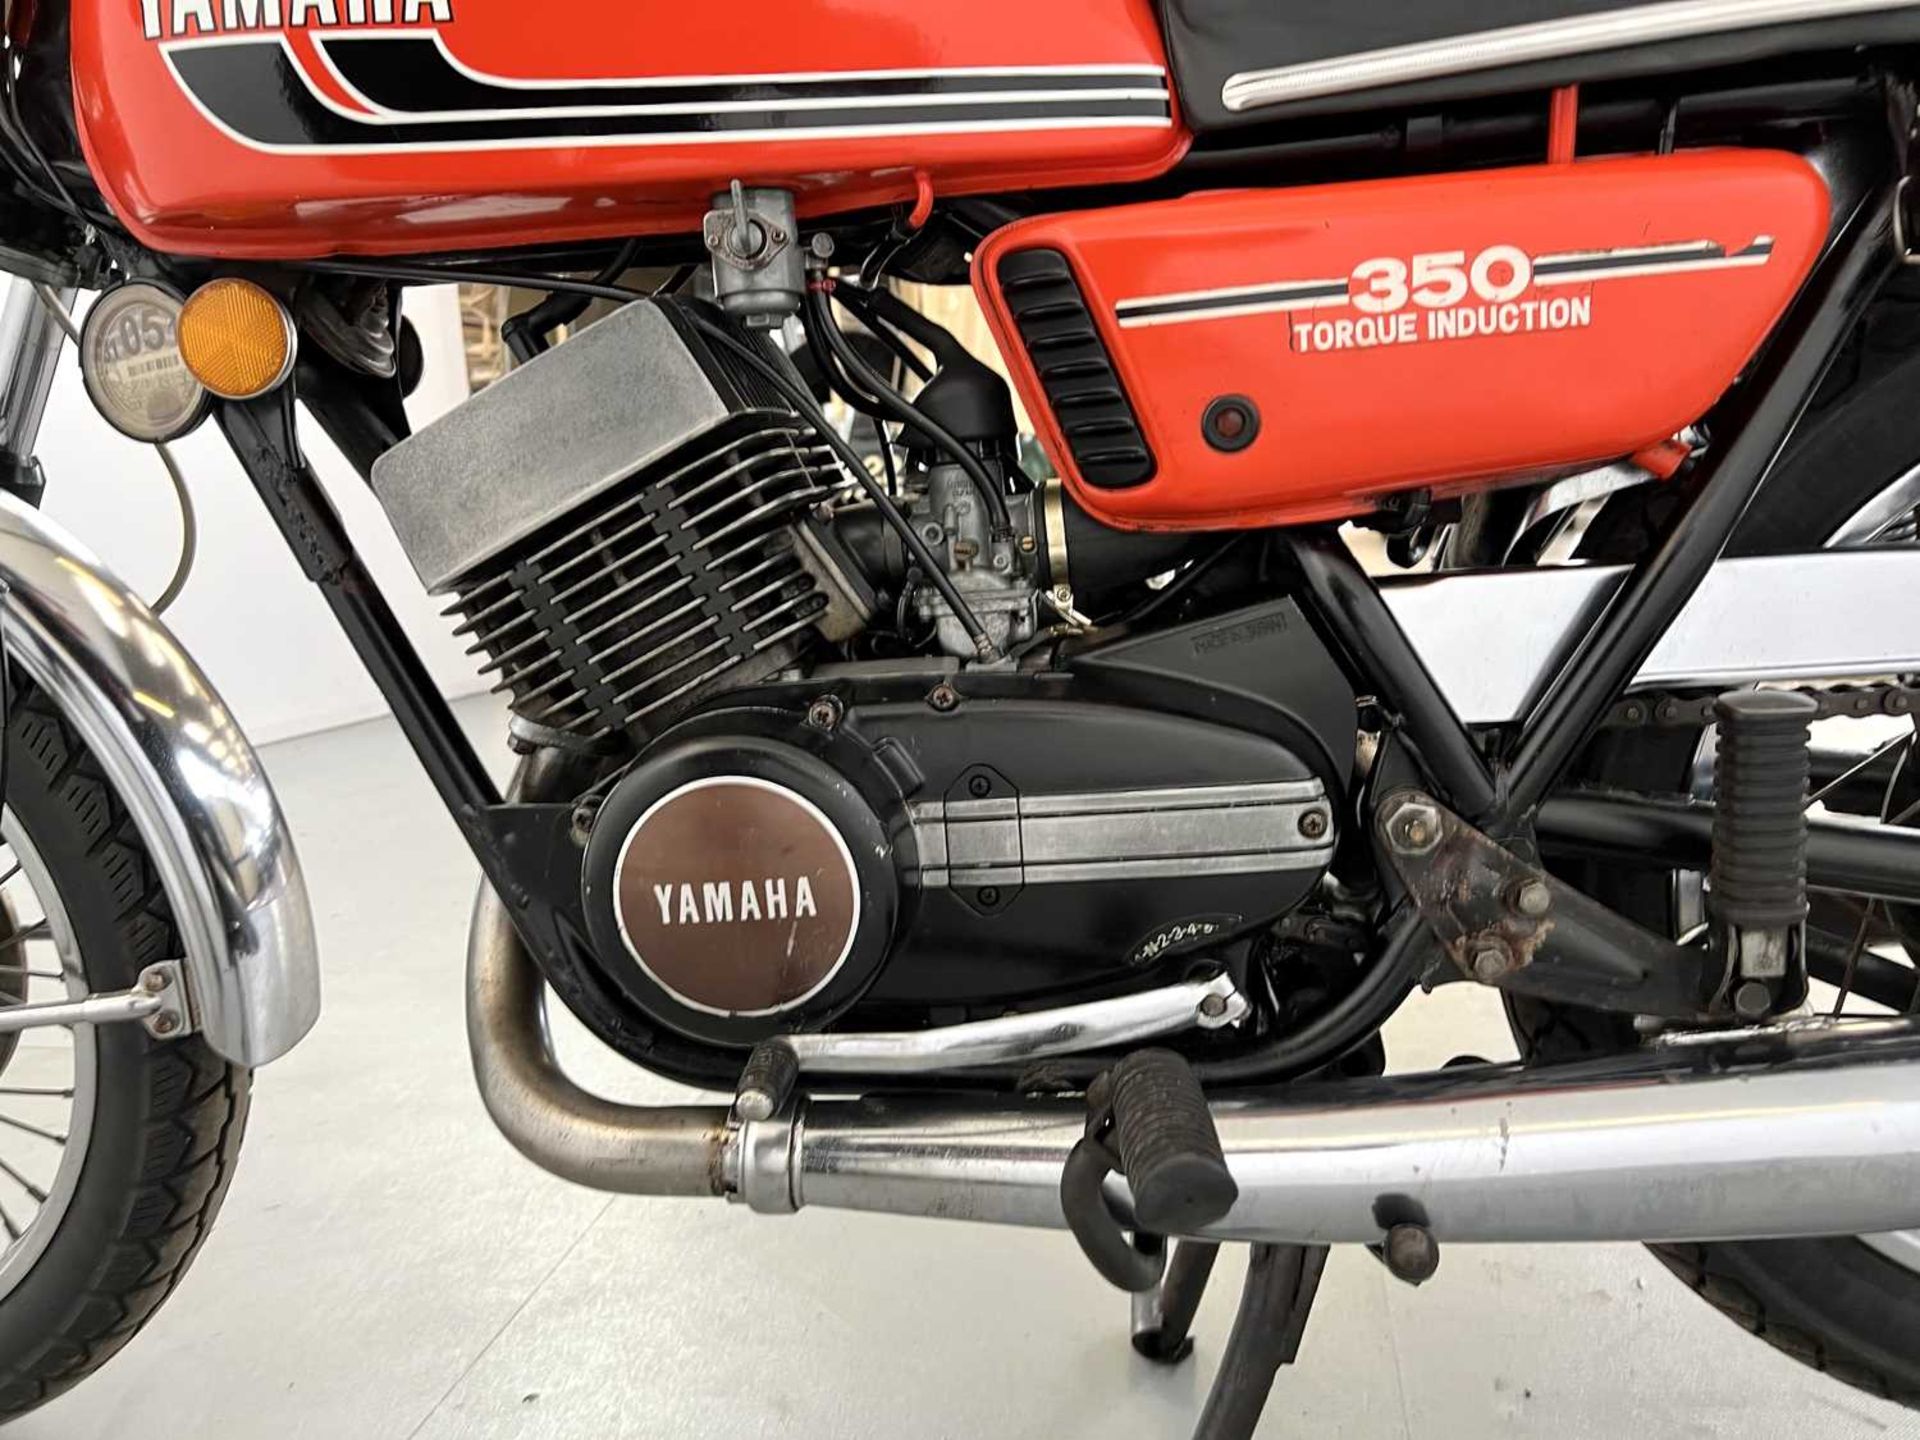 1975 Yamaha RD350 - Image 8 of 17